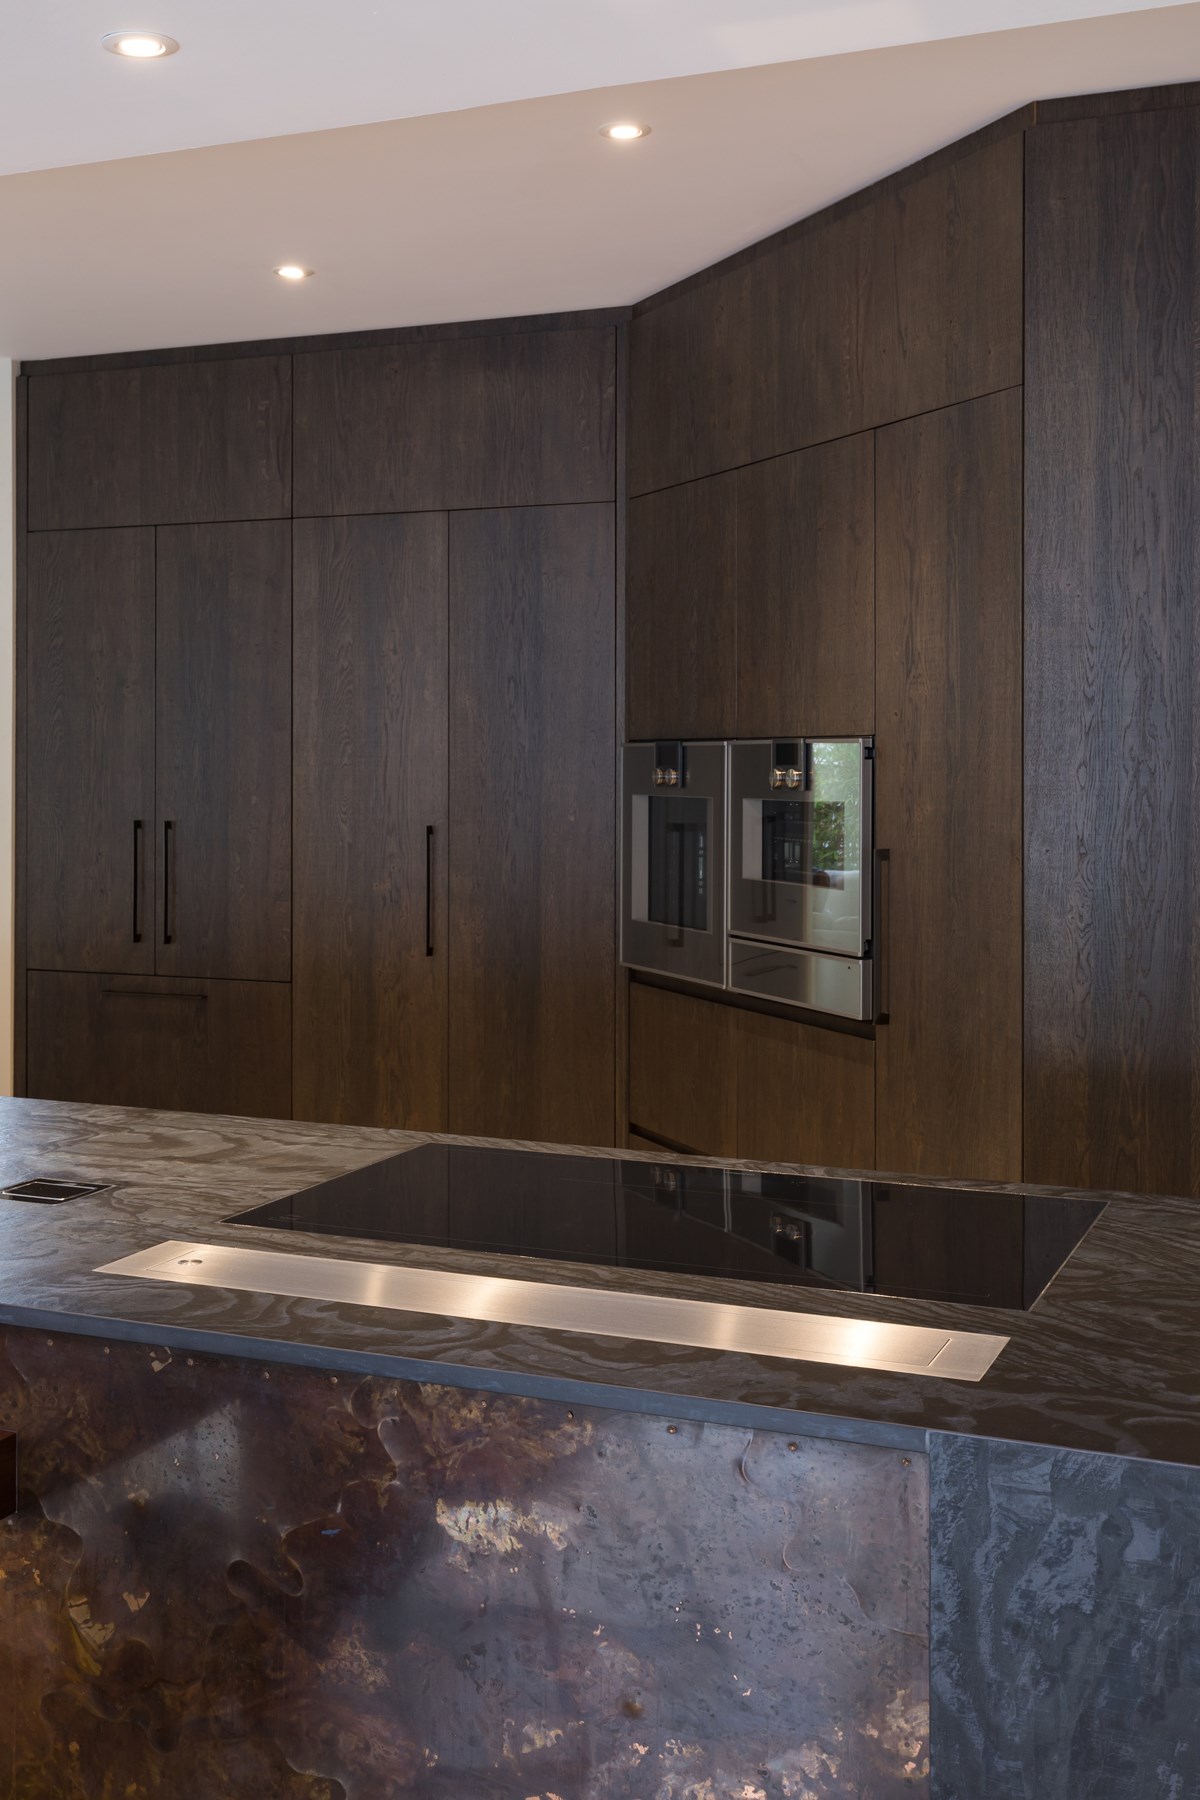 Prime Art Veneer, planked sawn. Marianne Gailer, Kitchens by Design (8).jpg